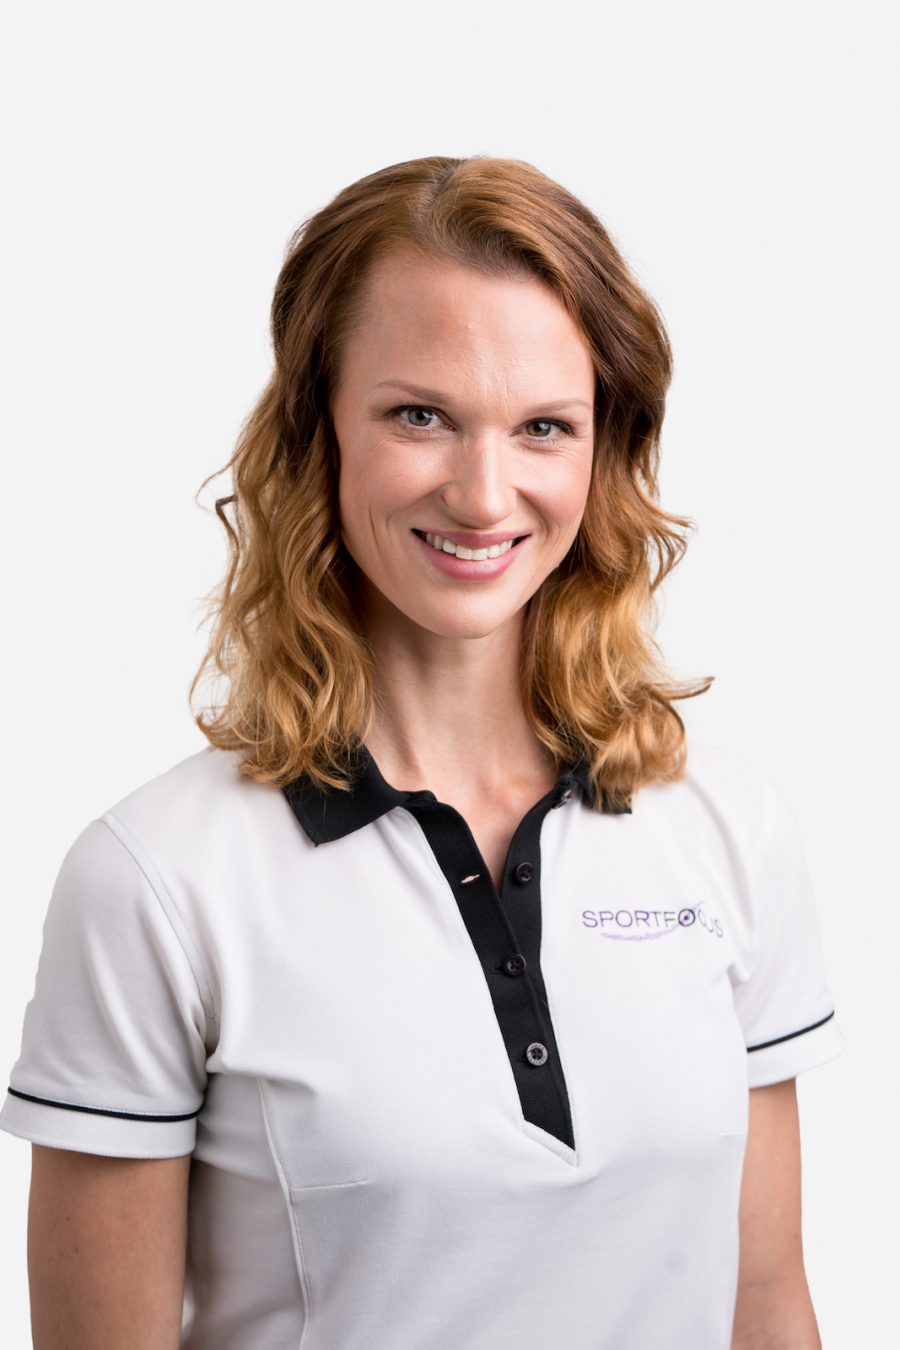 Paula Thesleff on sertifioitu urheilupsykologi, jonka taustat ovat joukkuevoimistelussa. Paula työskentelee Sportfocus Oy:ssa, joka tarjoaa psyykkisen valmennuksen ja urheilupsykologian palveluja.